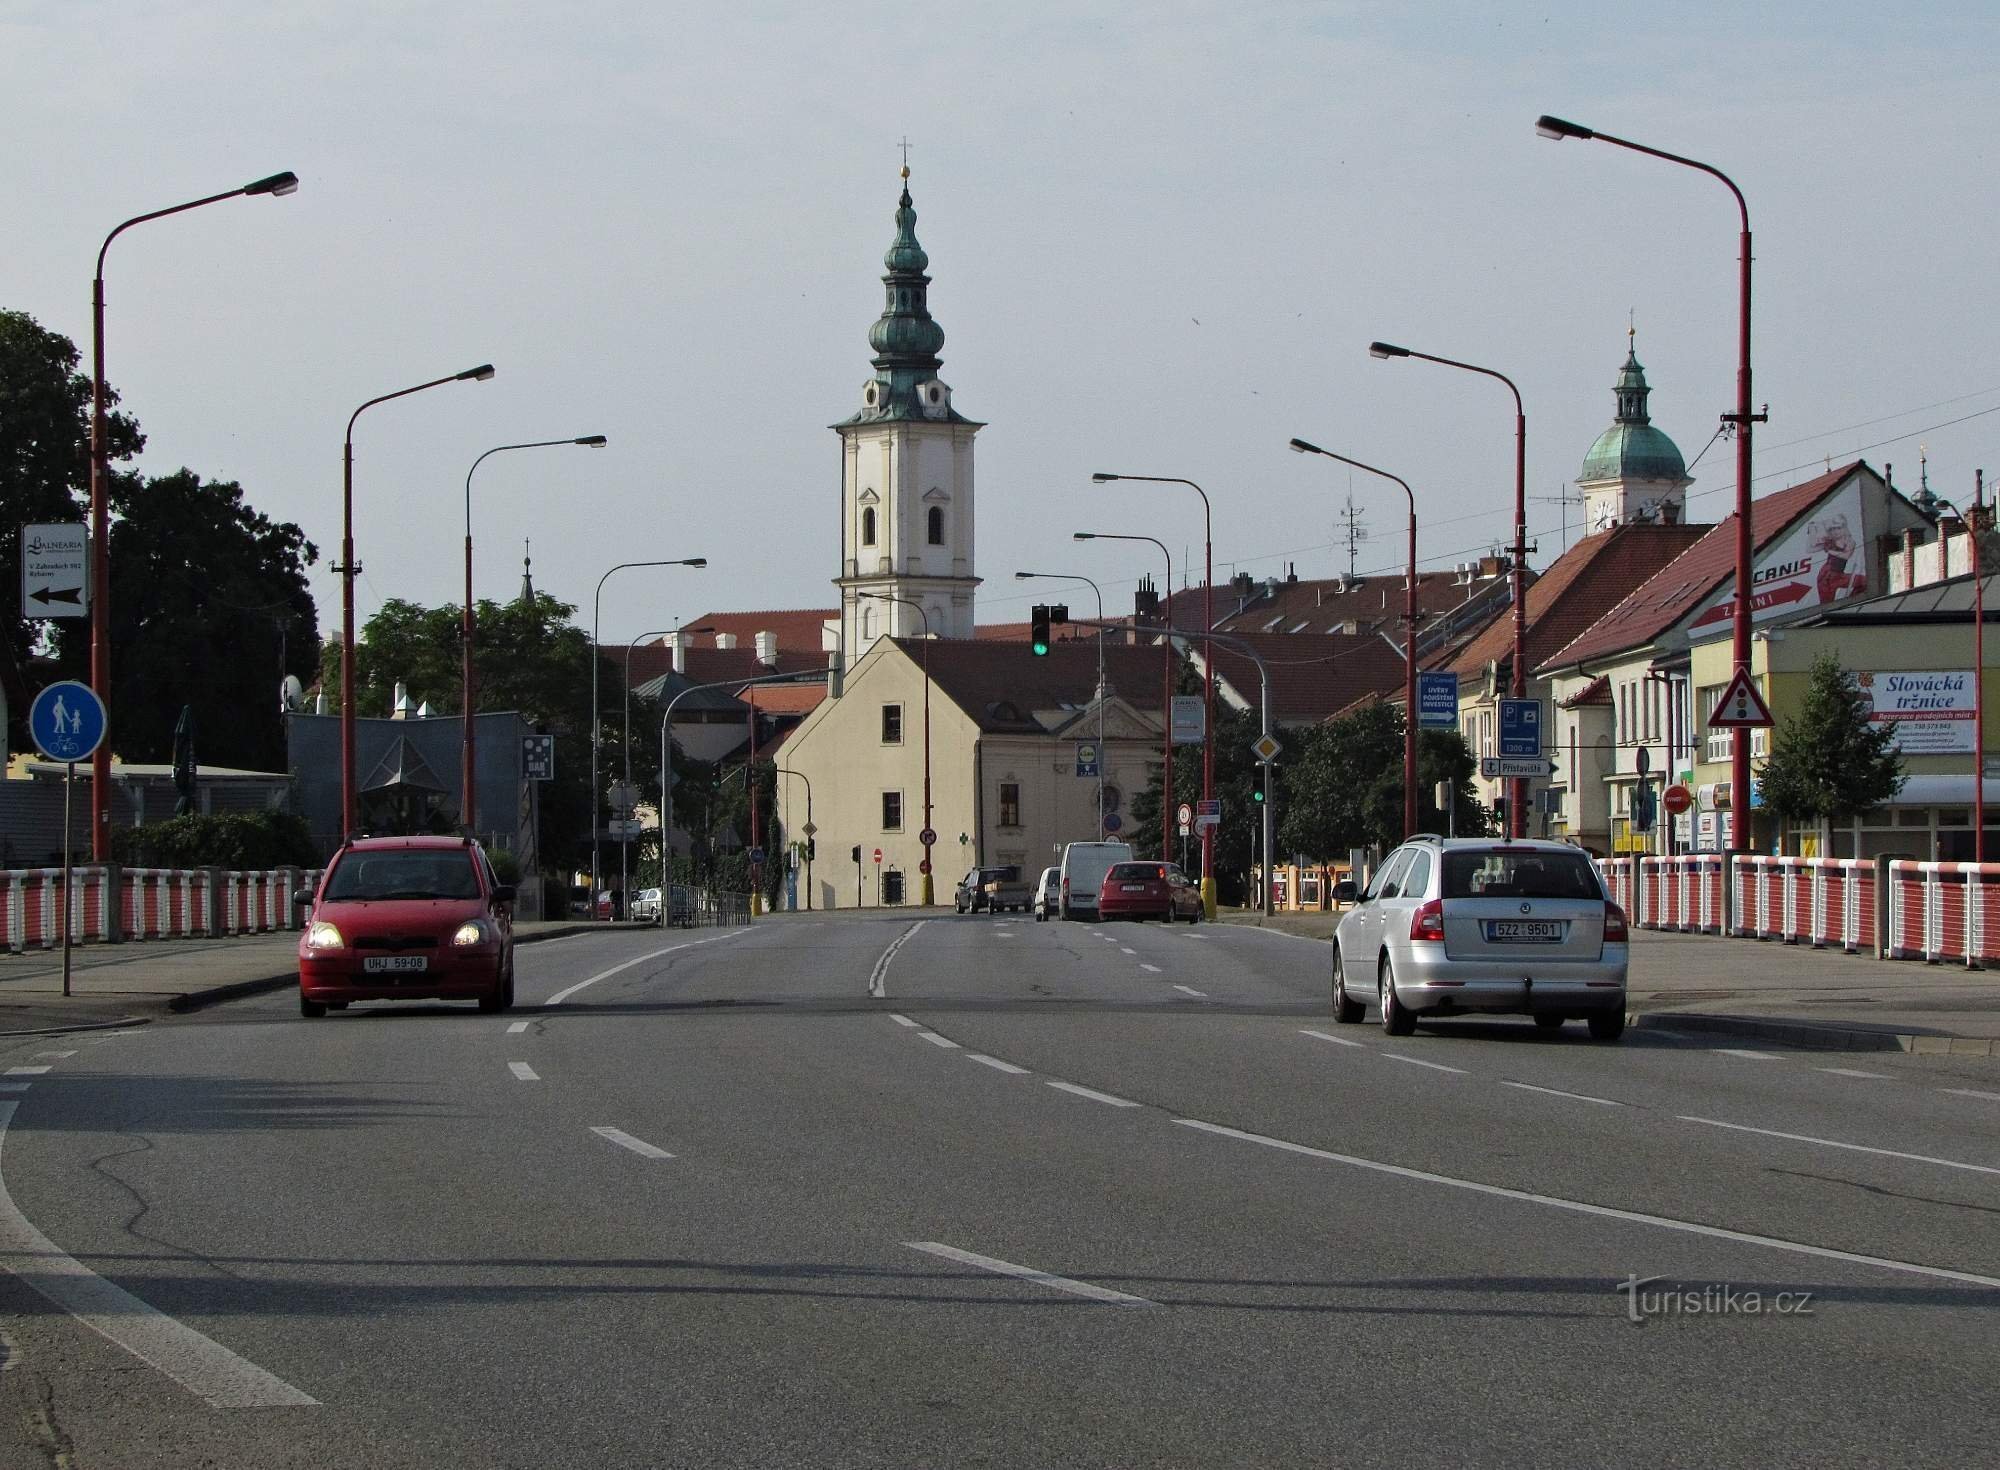 Uherské Hradiště - območje frančiškanskega samostana in cerkve